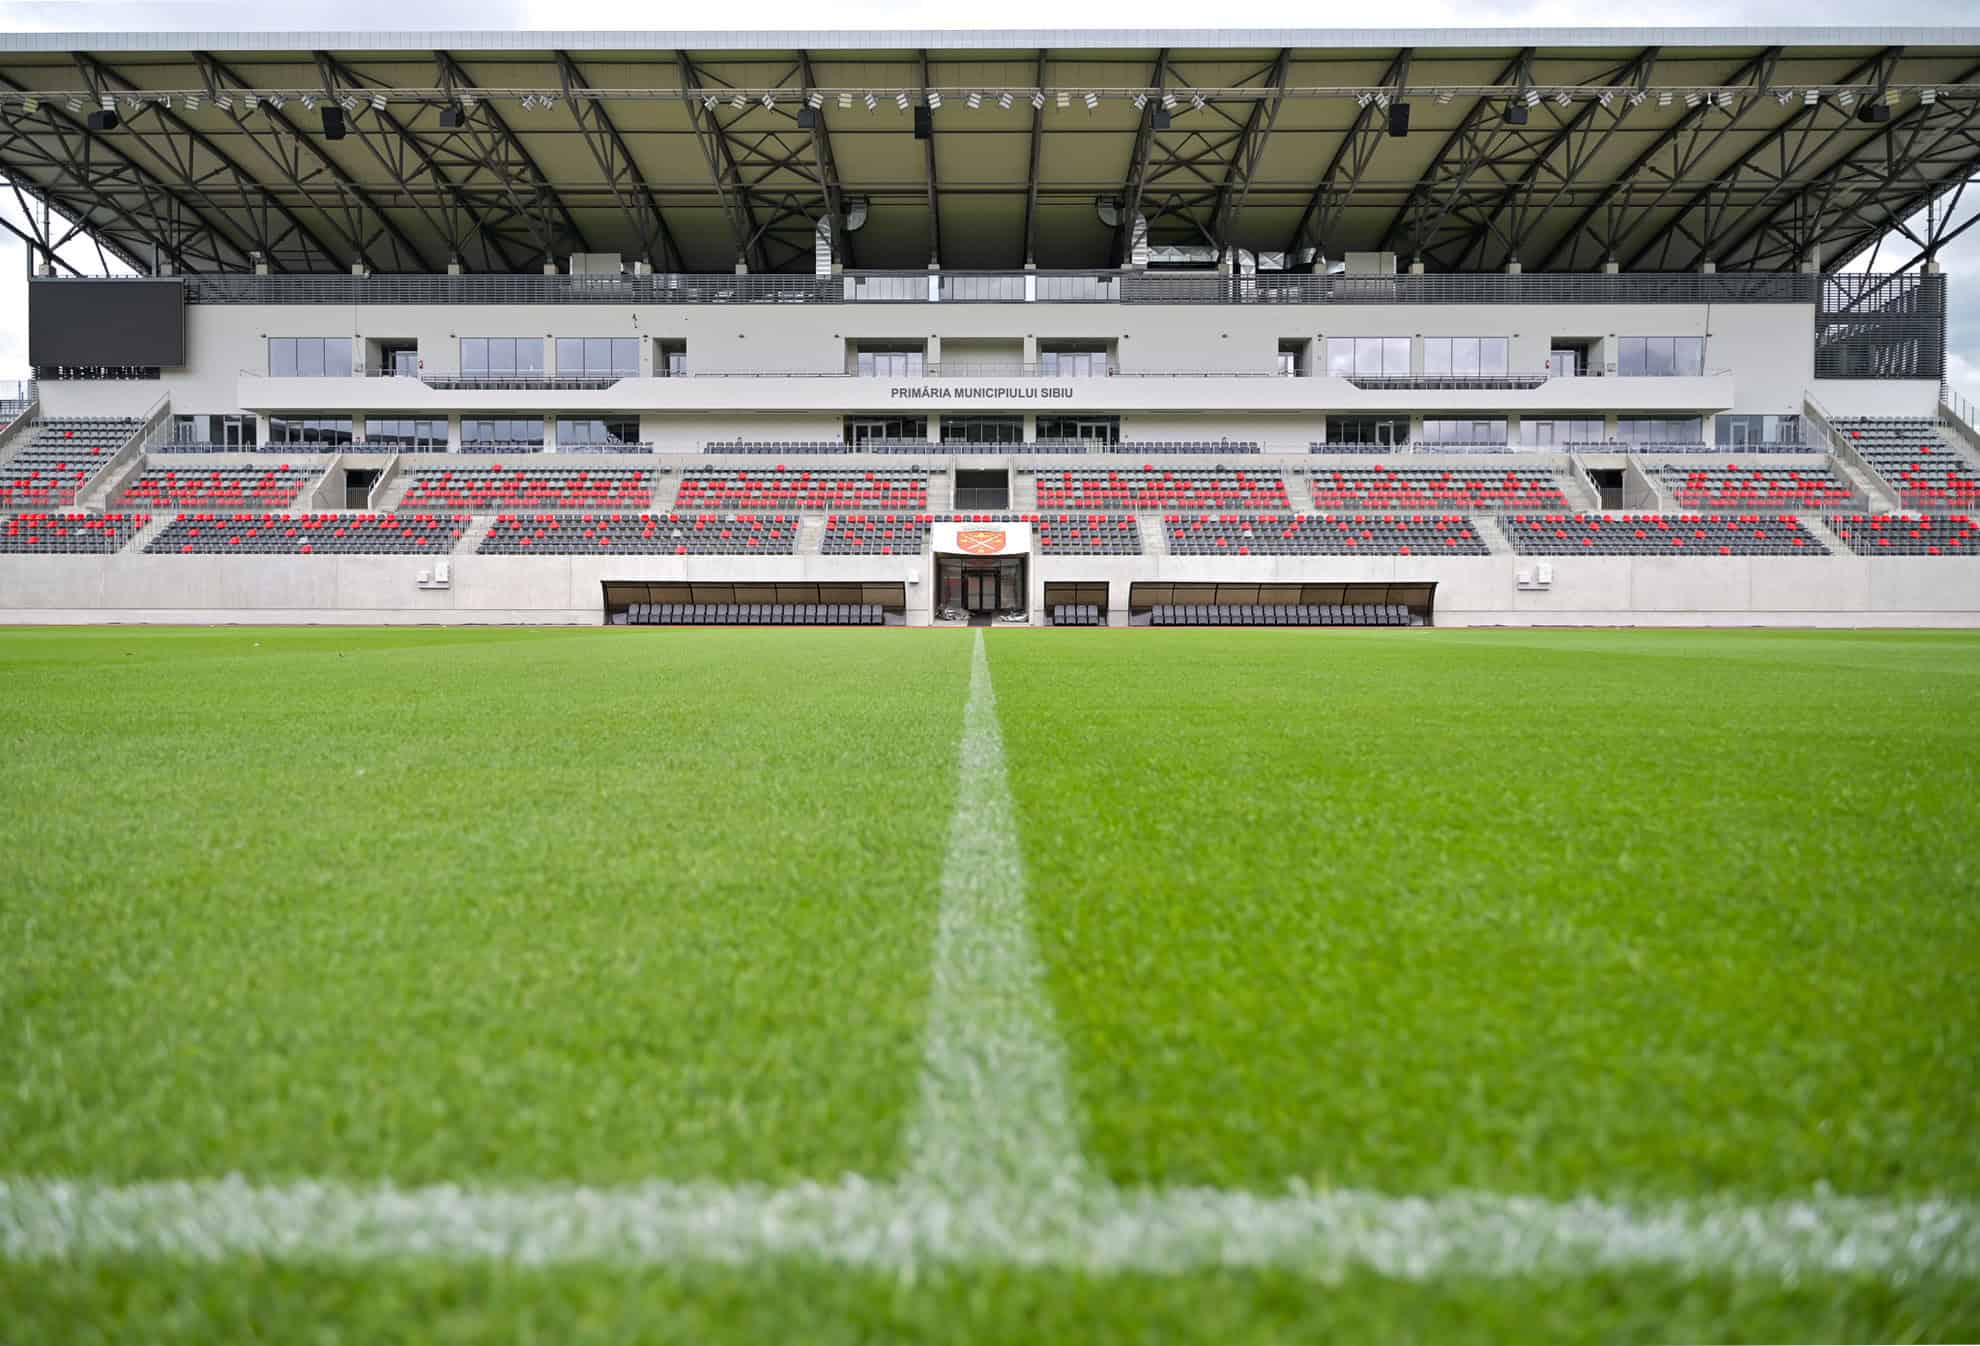 stadionul municipal sibiu, omologat de uefa pentru meciuri din cupele europene. cum arată acum noul gazon (foto)